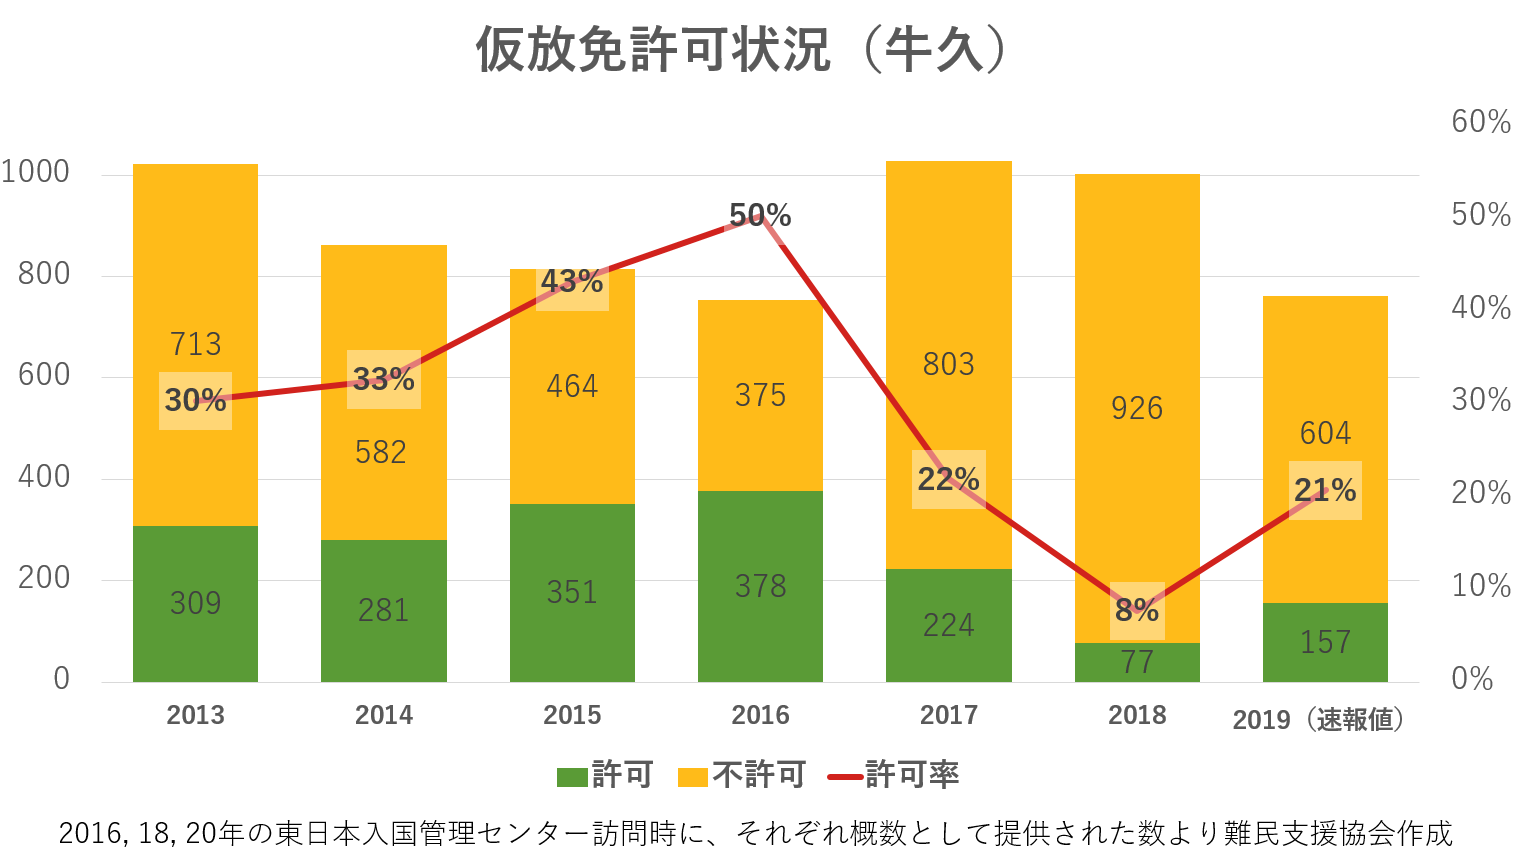 （「許可率（許可:不許可）」として記載） 2013年＝30％（309:713）、2014年＝33％（281:582）、2015年＝43％（351:464）、2016年＝50％（378:375）、2017年＝22％（224:803）、2018年＝8%（77:926）、2019年＝21%（157:604）　*2016, 18, 20年の東日本入国管理センター訪問時に、それぞれ概数として提供された数より難民支援協会作成